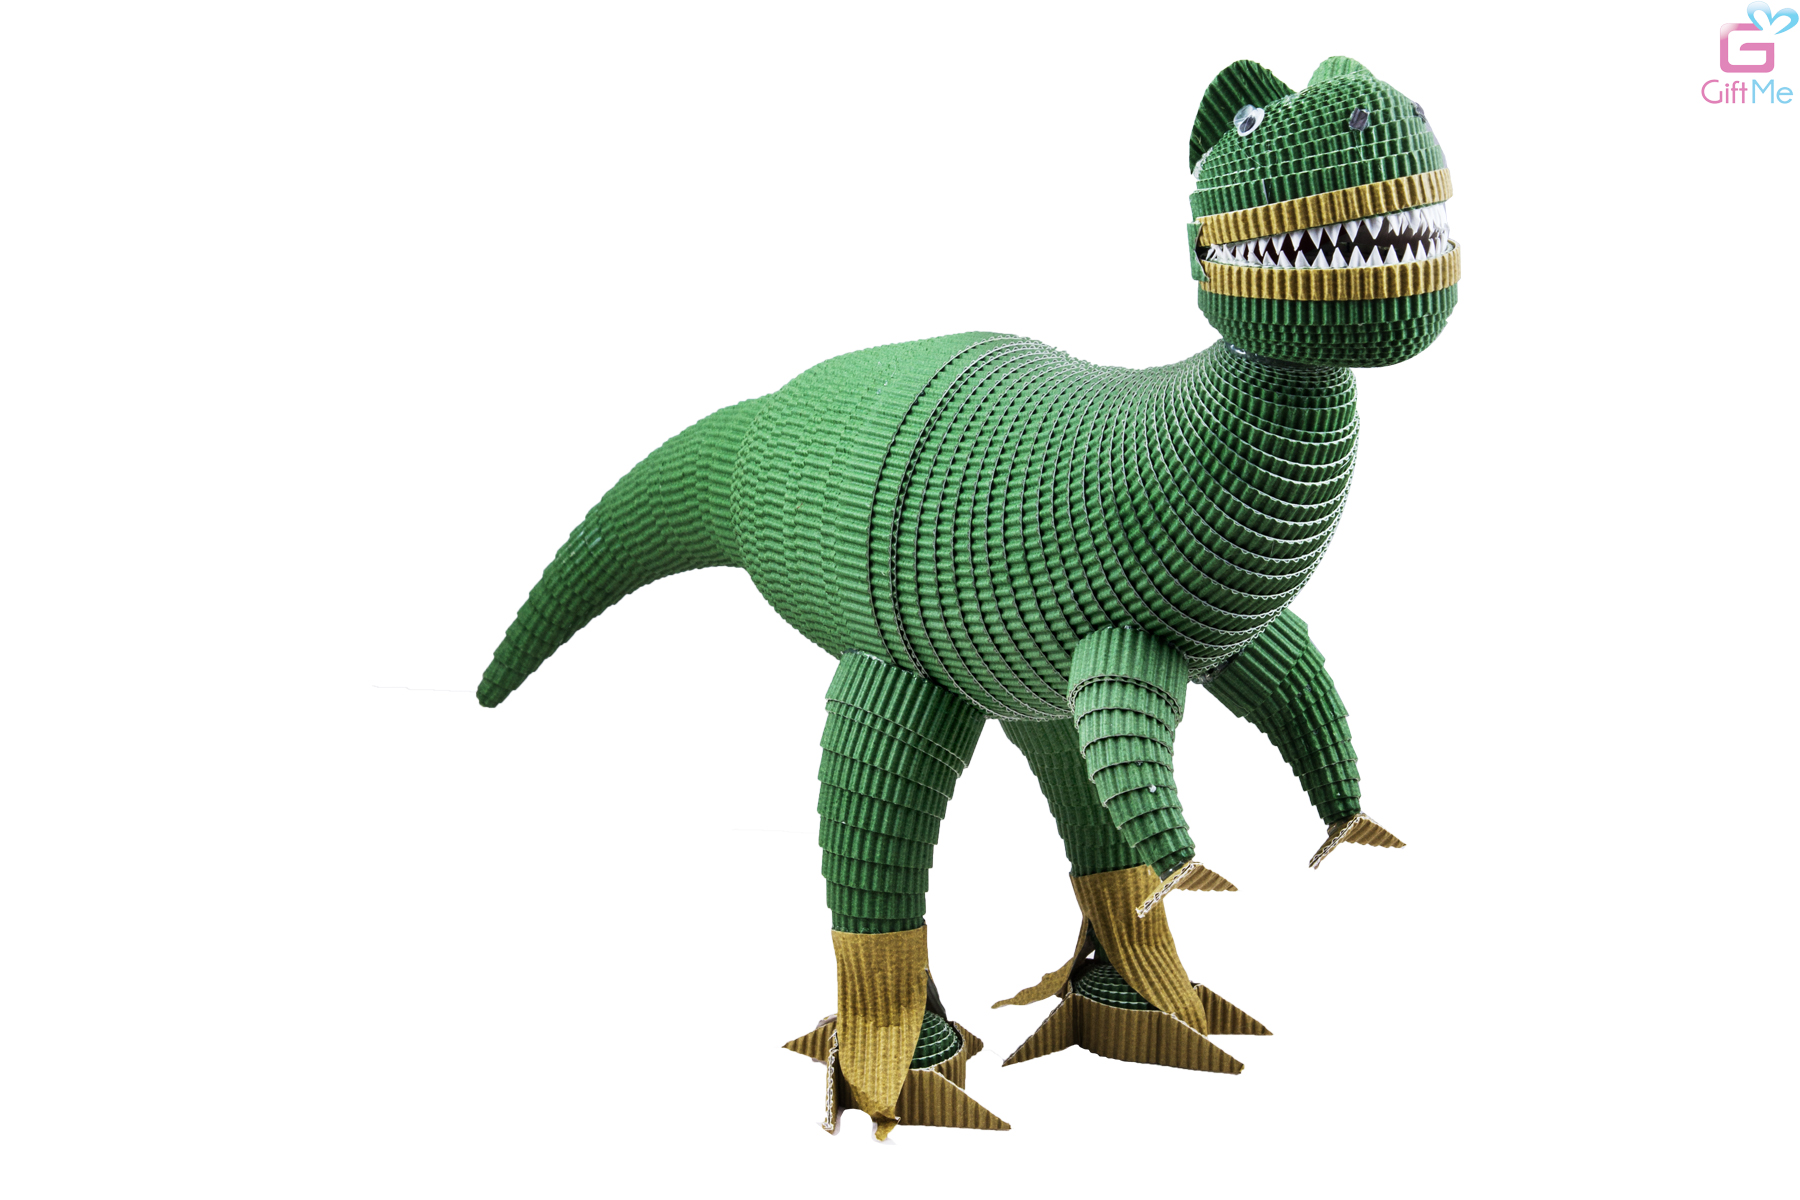 Объемный динозавр из гофрокартона.